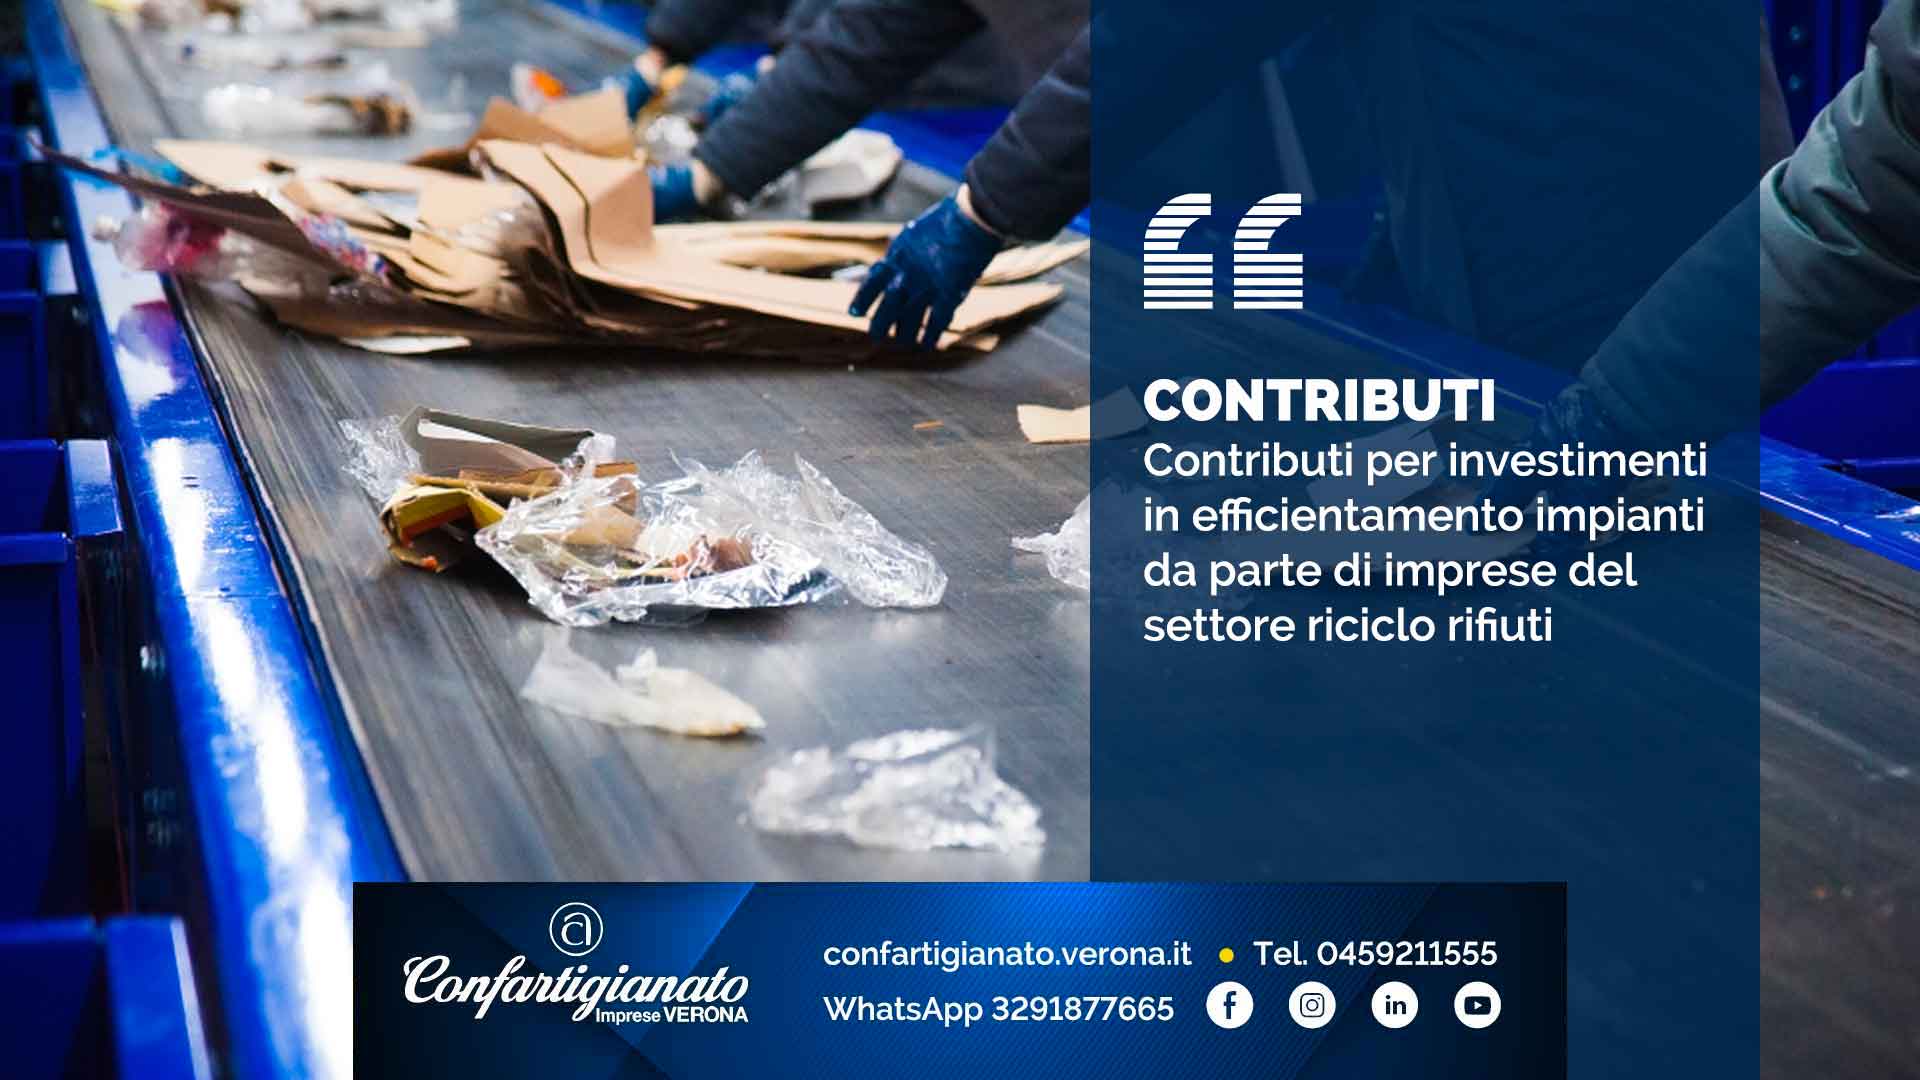 CONTRIBUTI – Contributi per investimenti in efficientamento impianti da parte di imprese del settore riciclo rifiuti